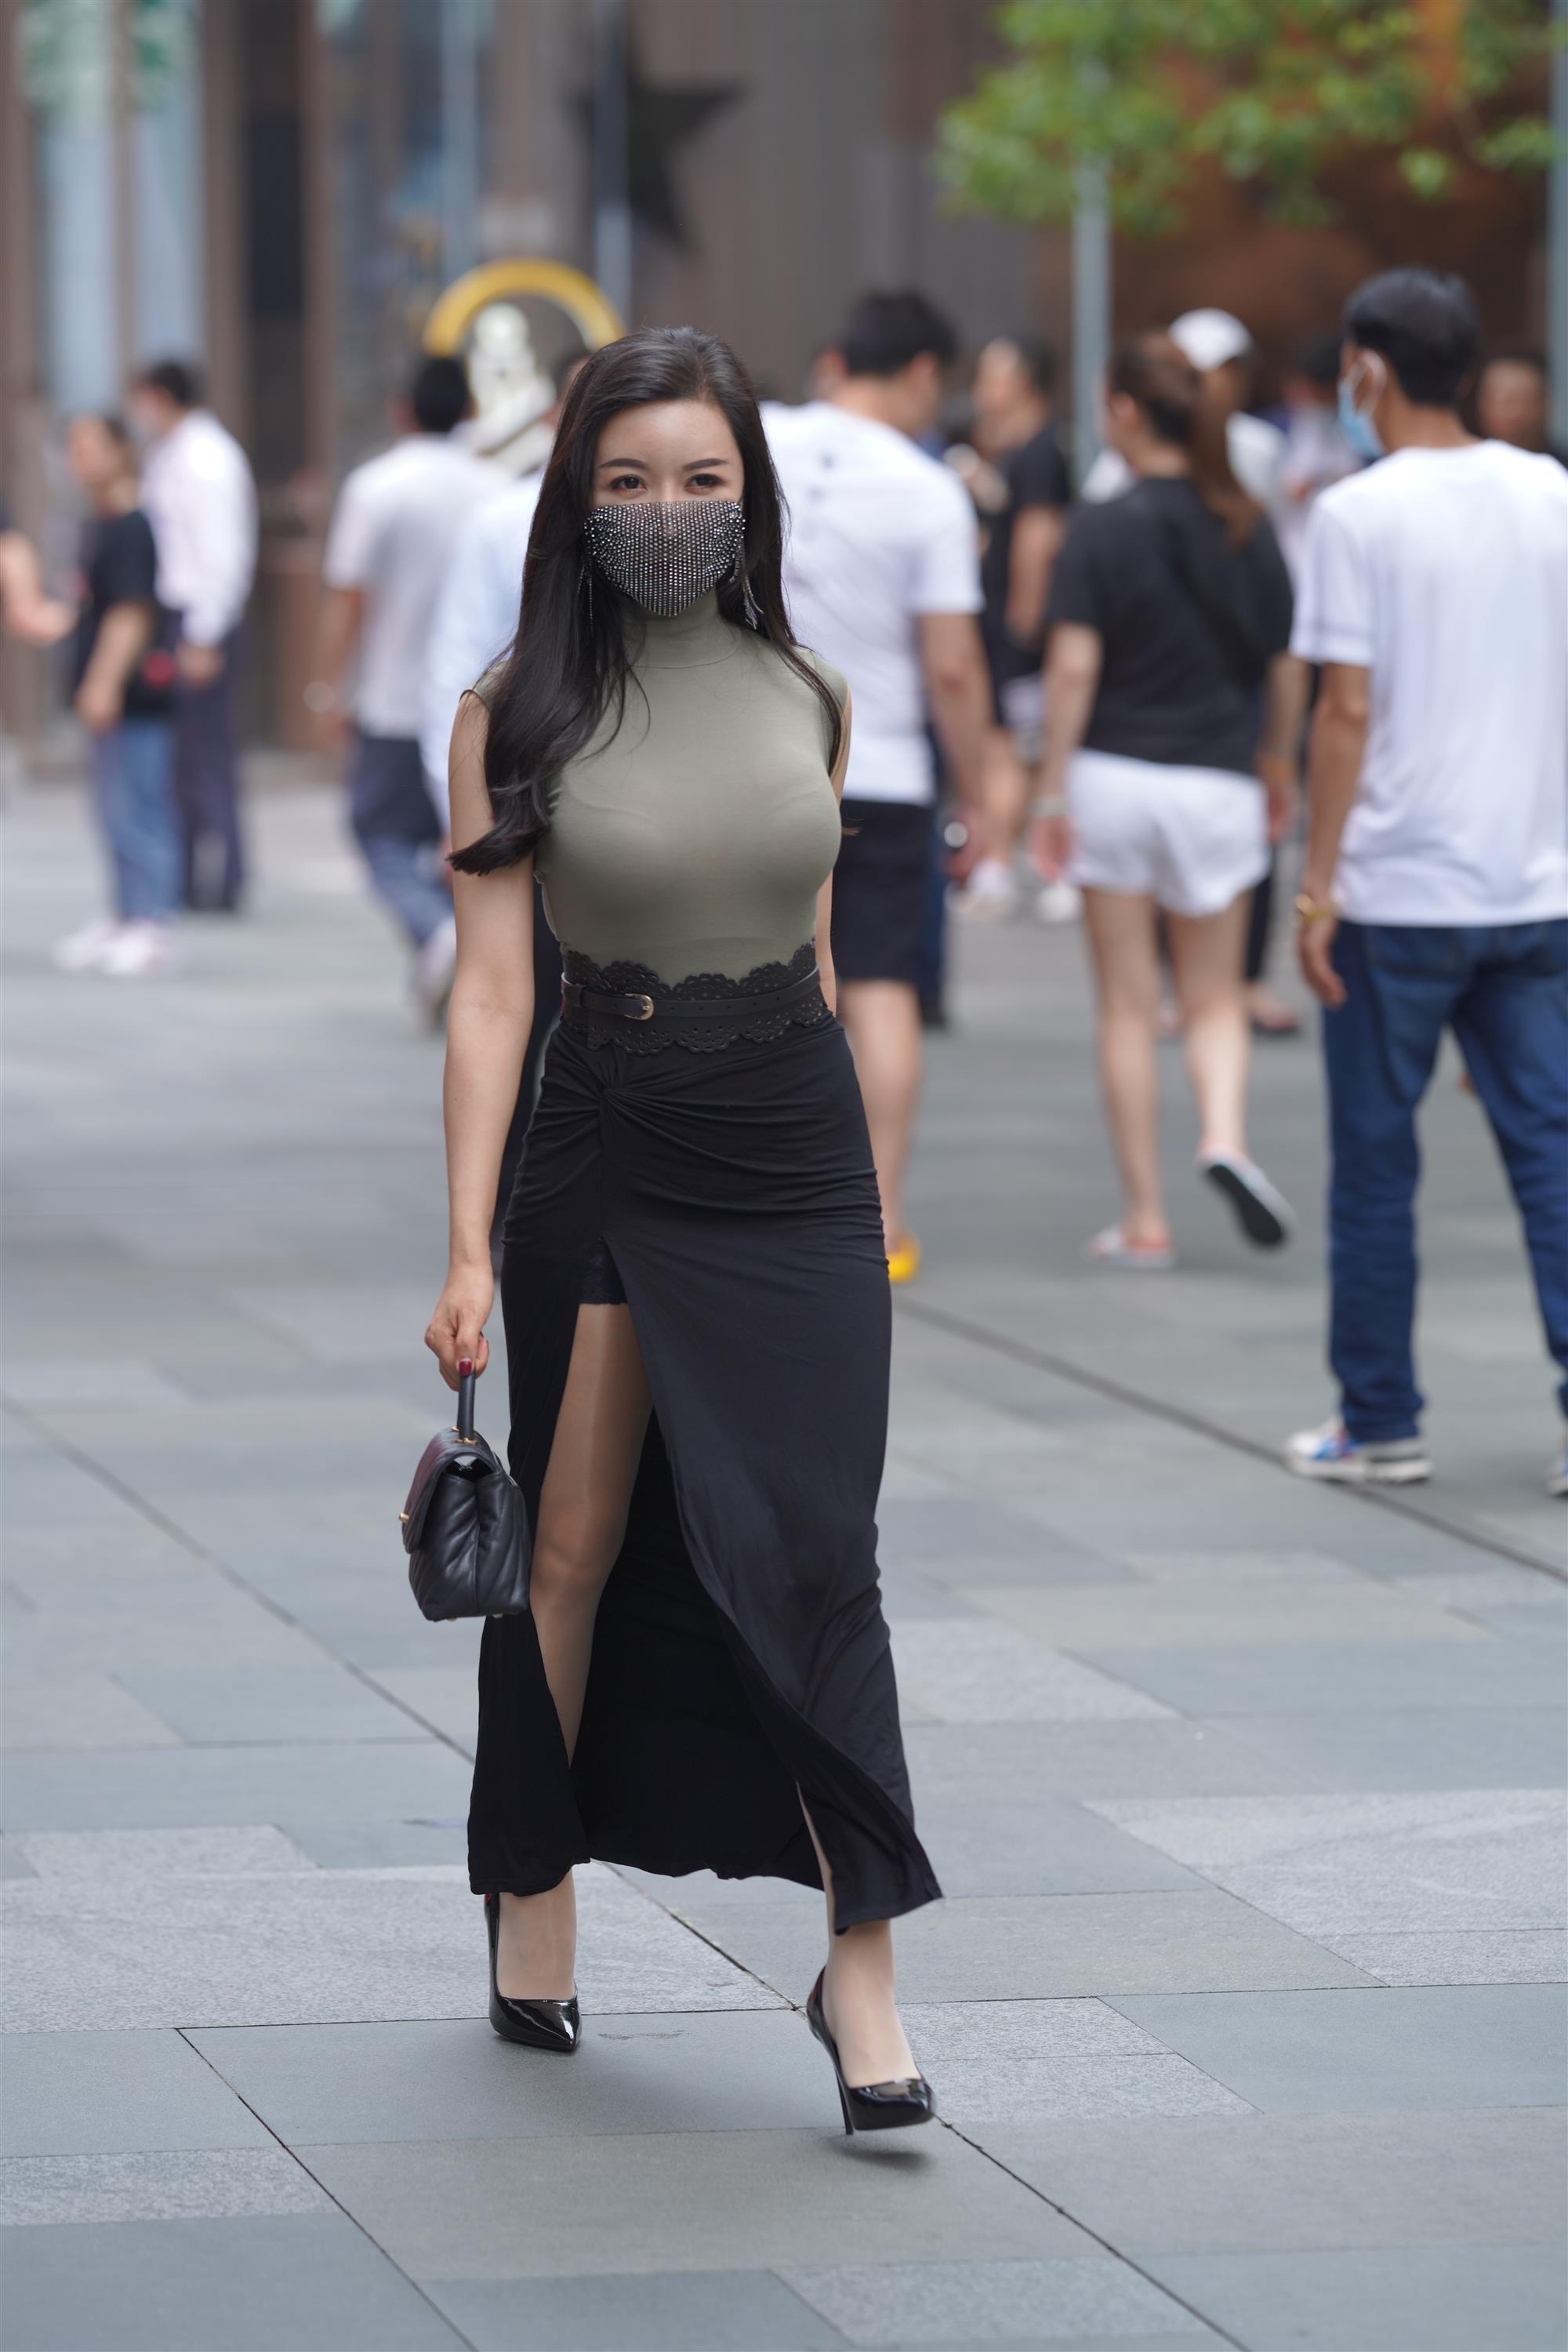 Street 欣儿 Long black skirt - 68.jpg